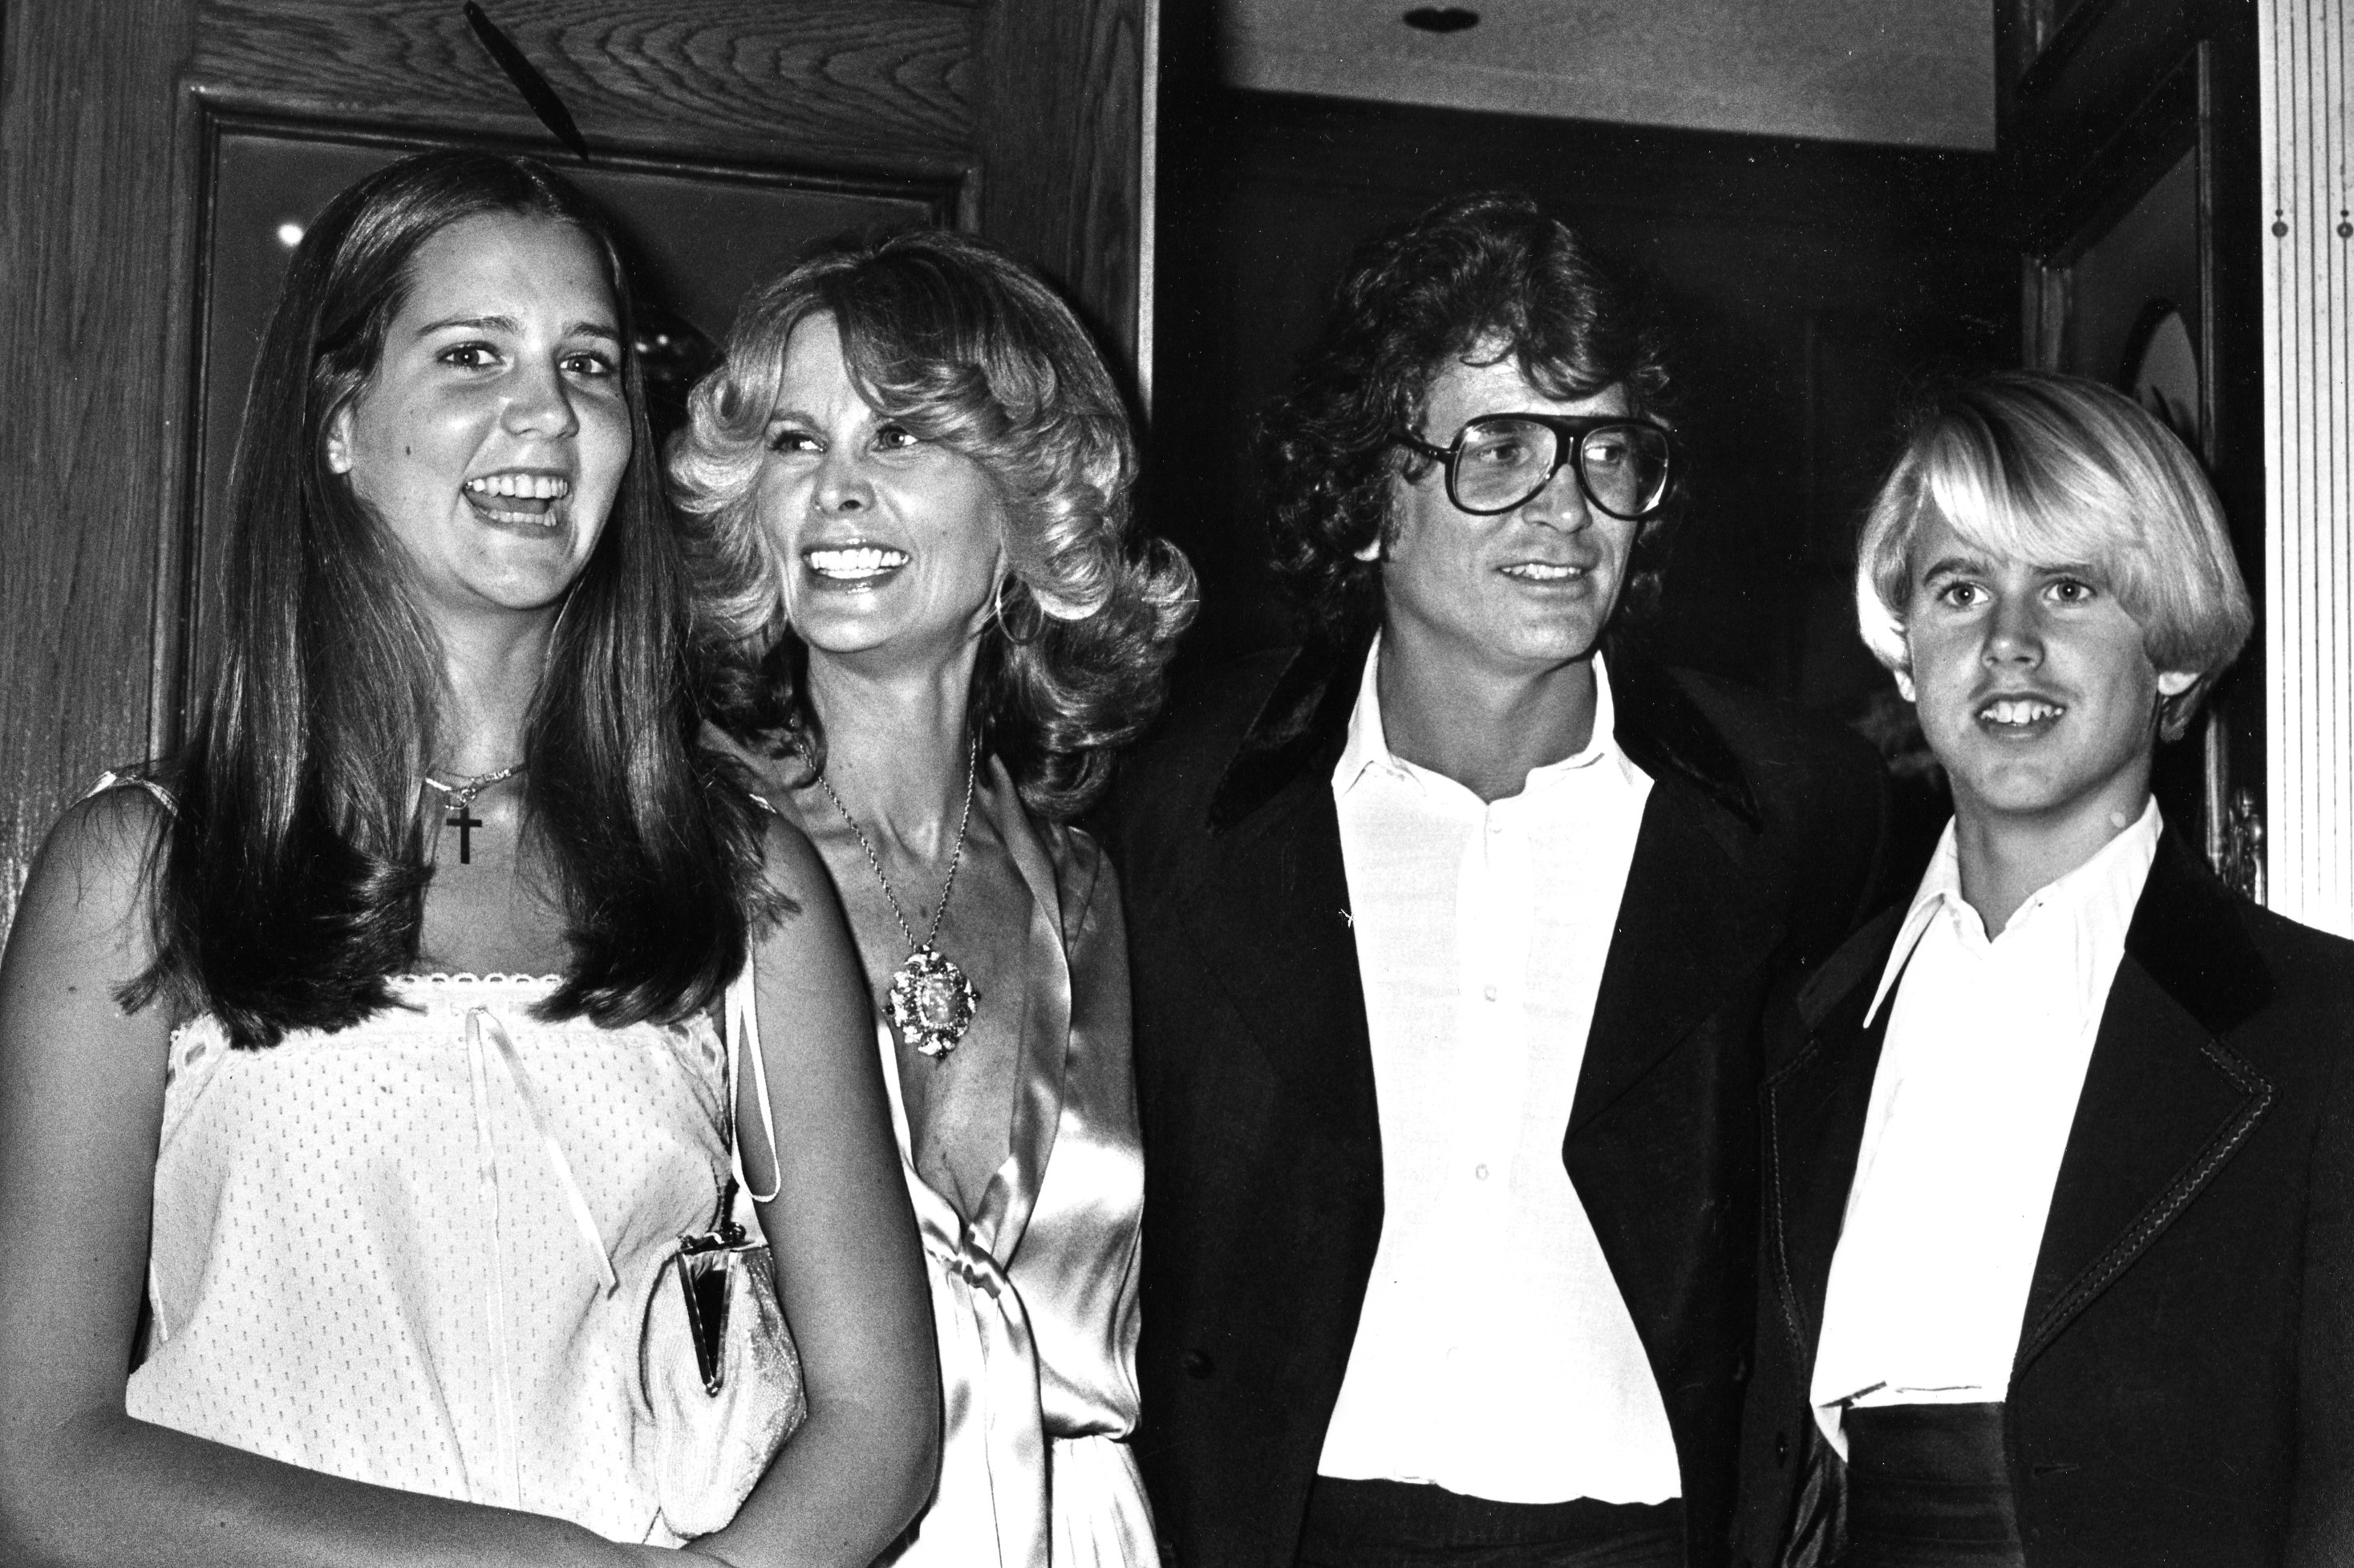 Michael Landon, su esposa Lynn Noe, su hija Leslie Landon y su hijo Michael Landon Jr. asisten a la cuarta edición de los premios People's Choice Awards el 20 de febrero de 1978 en Los Ángeles, California. / Foto: Getty Images